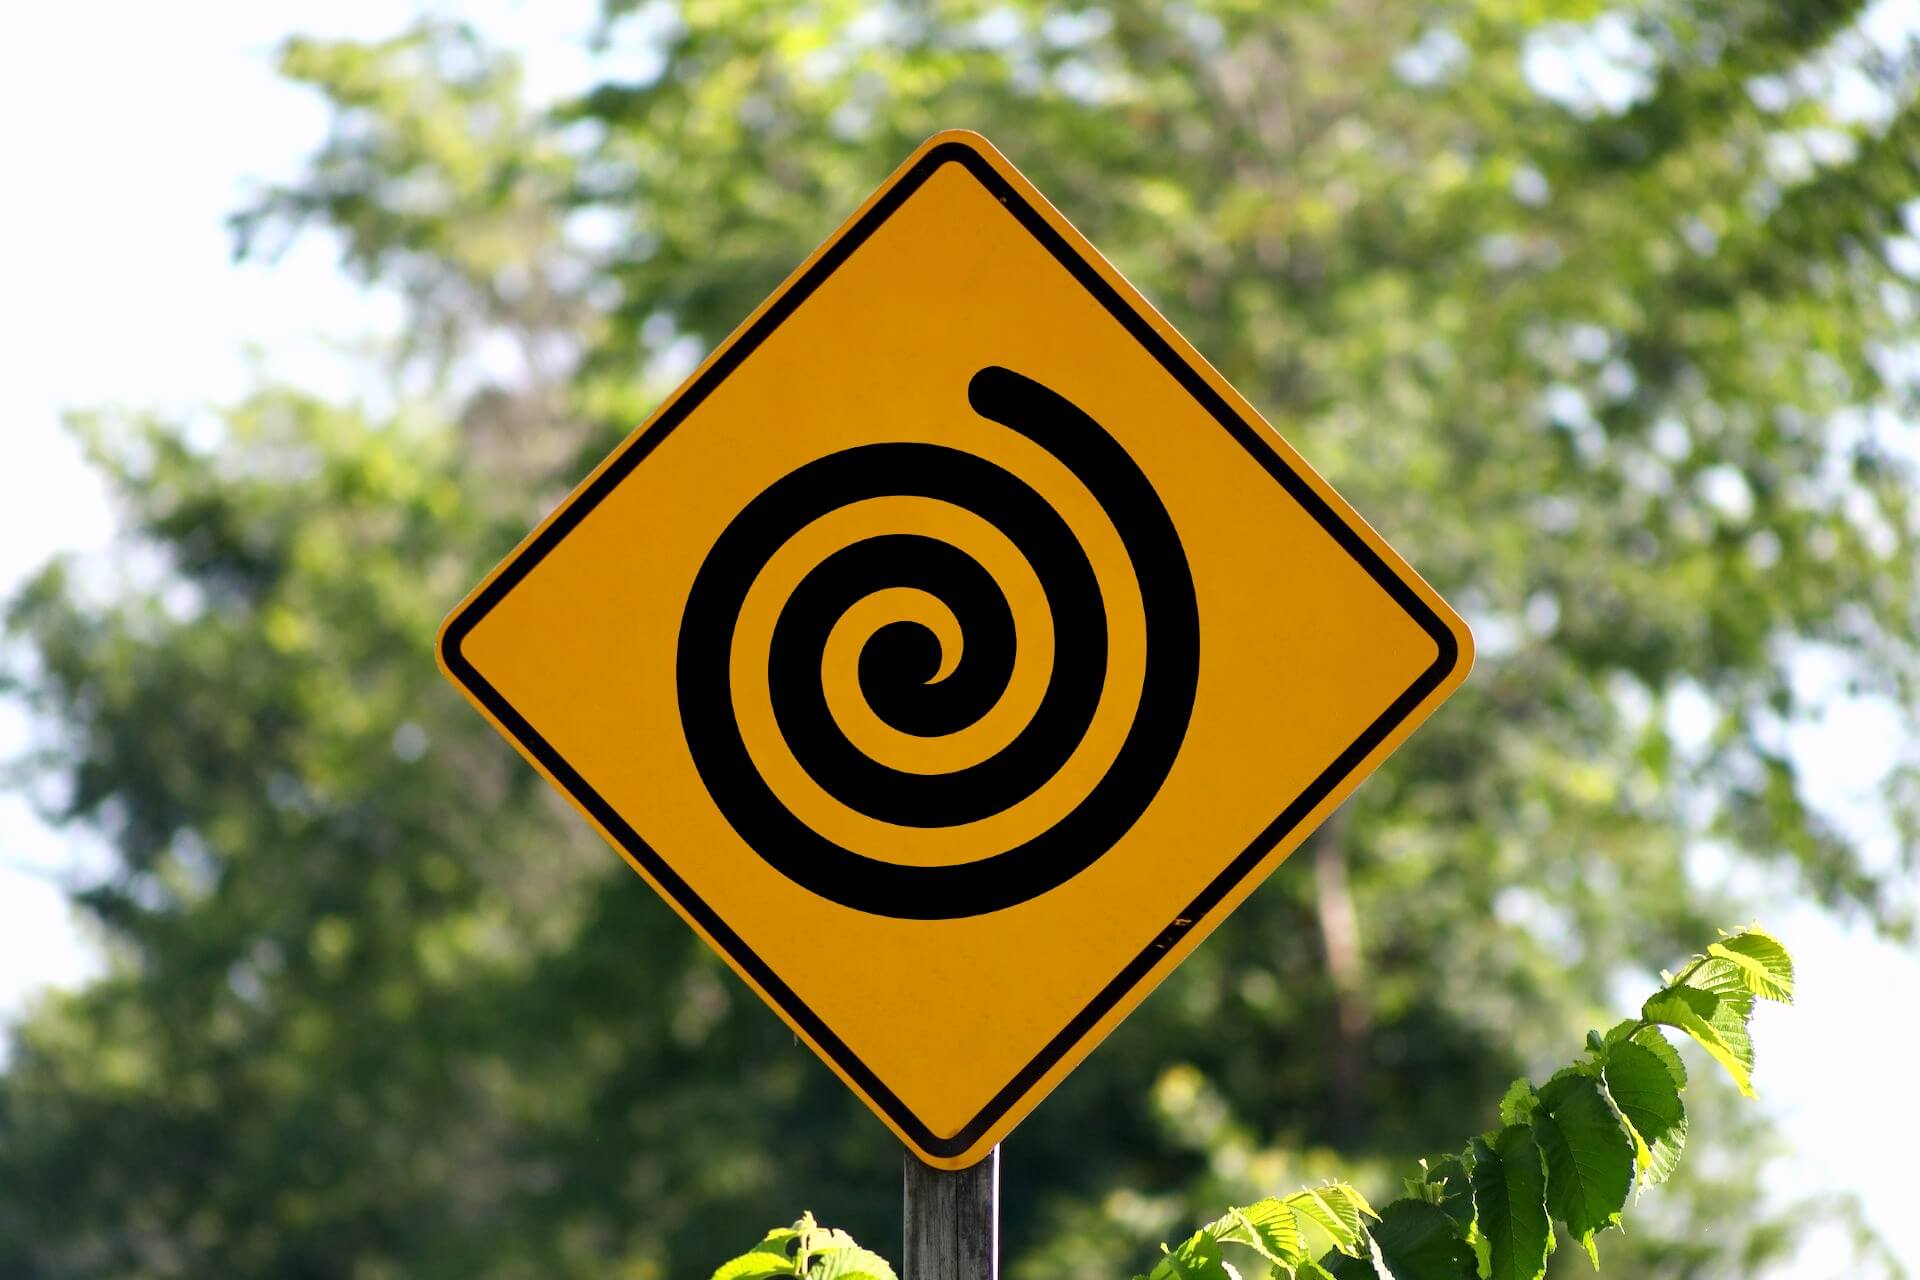 Shame spiral warning sign